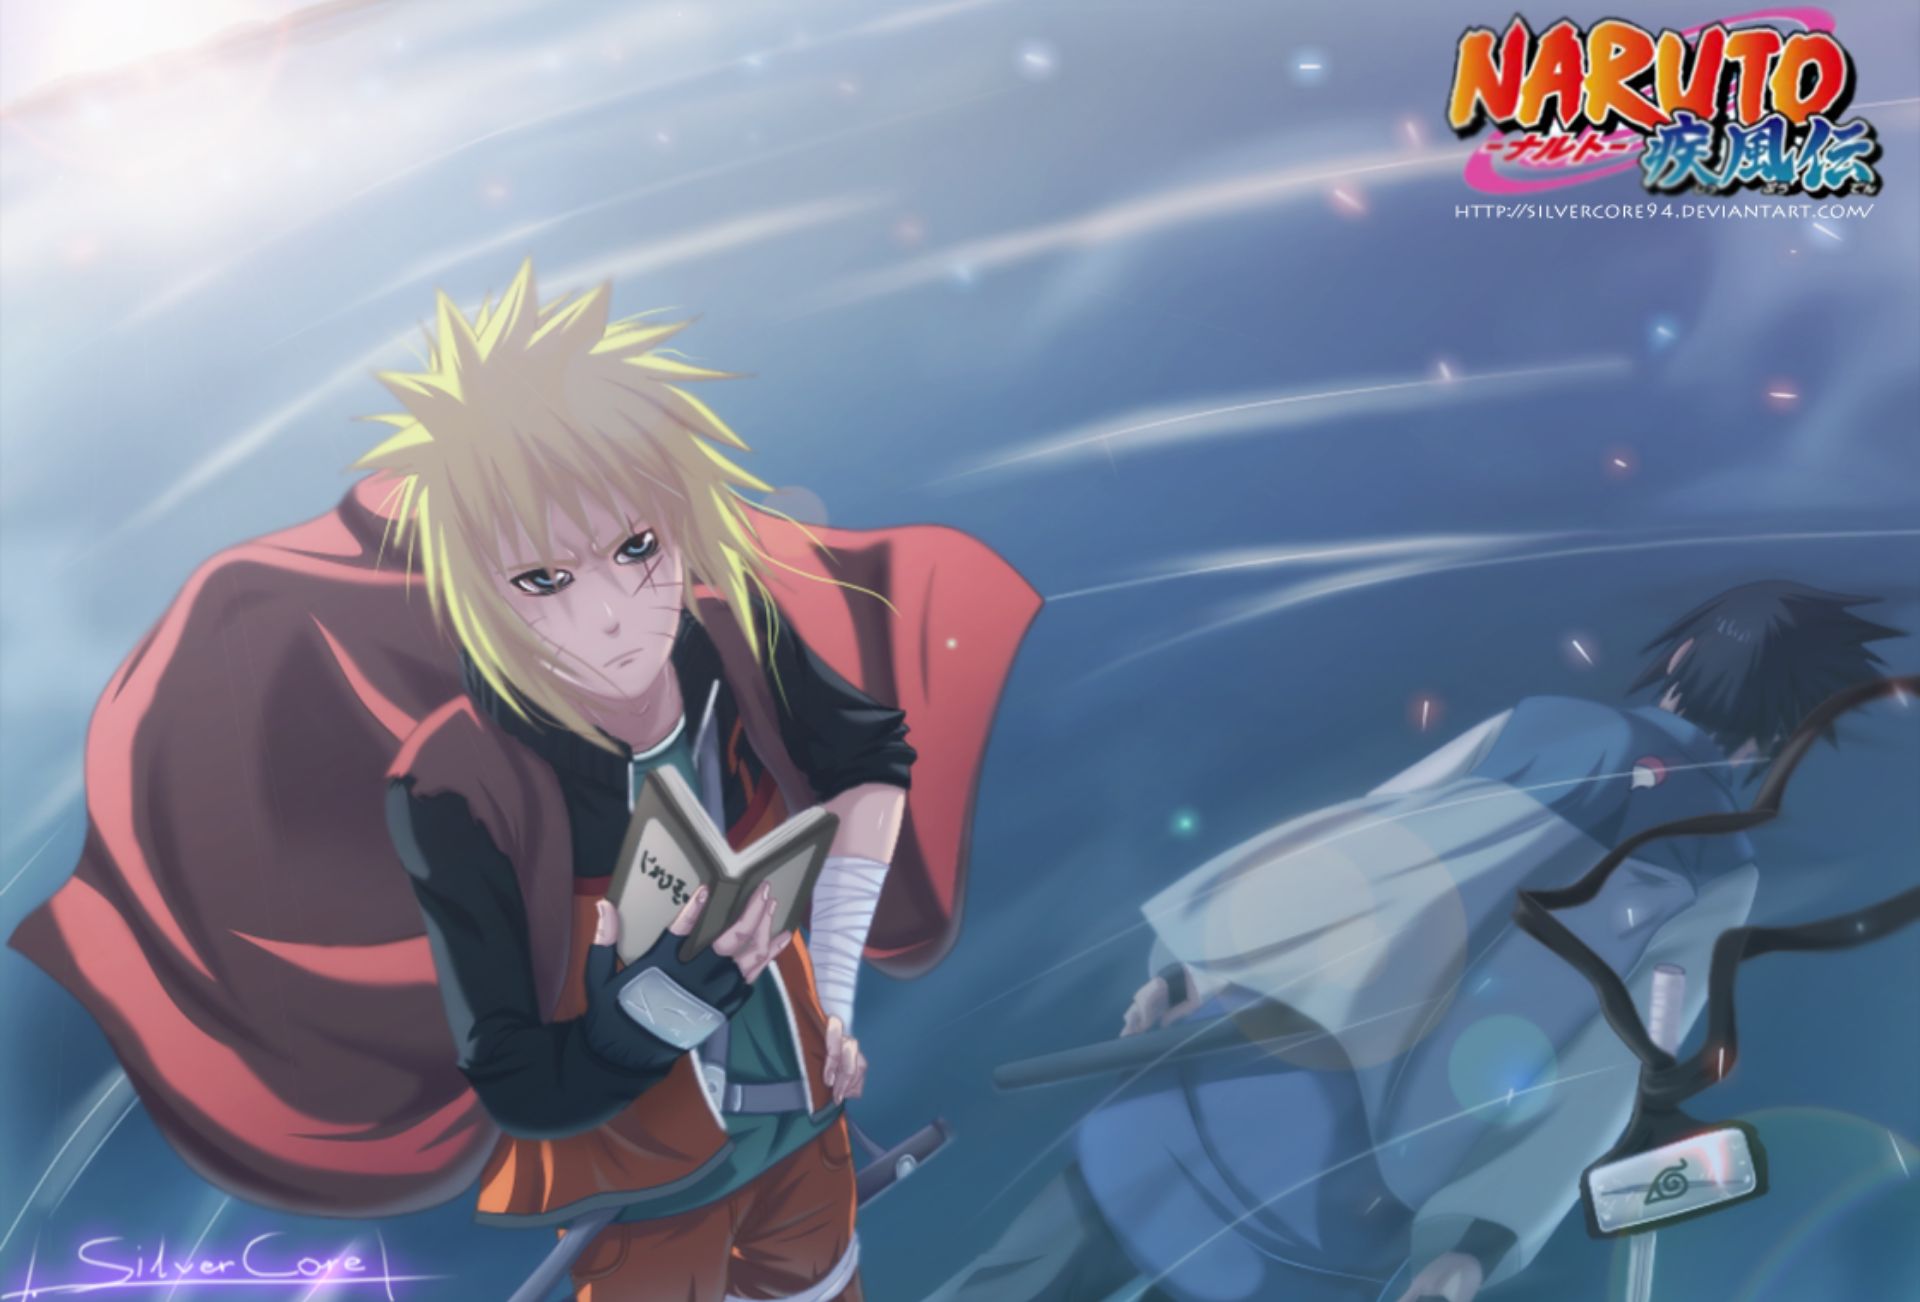 Download mobile wallpaper Anime, Naruto, Sasuke Uchiha, Naruto Uzumaki for free.